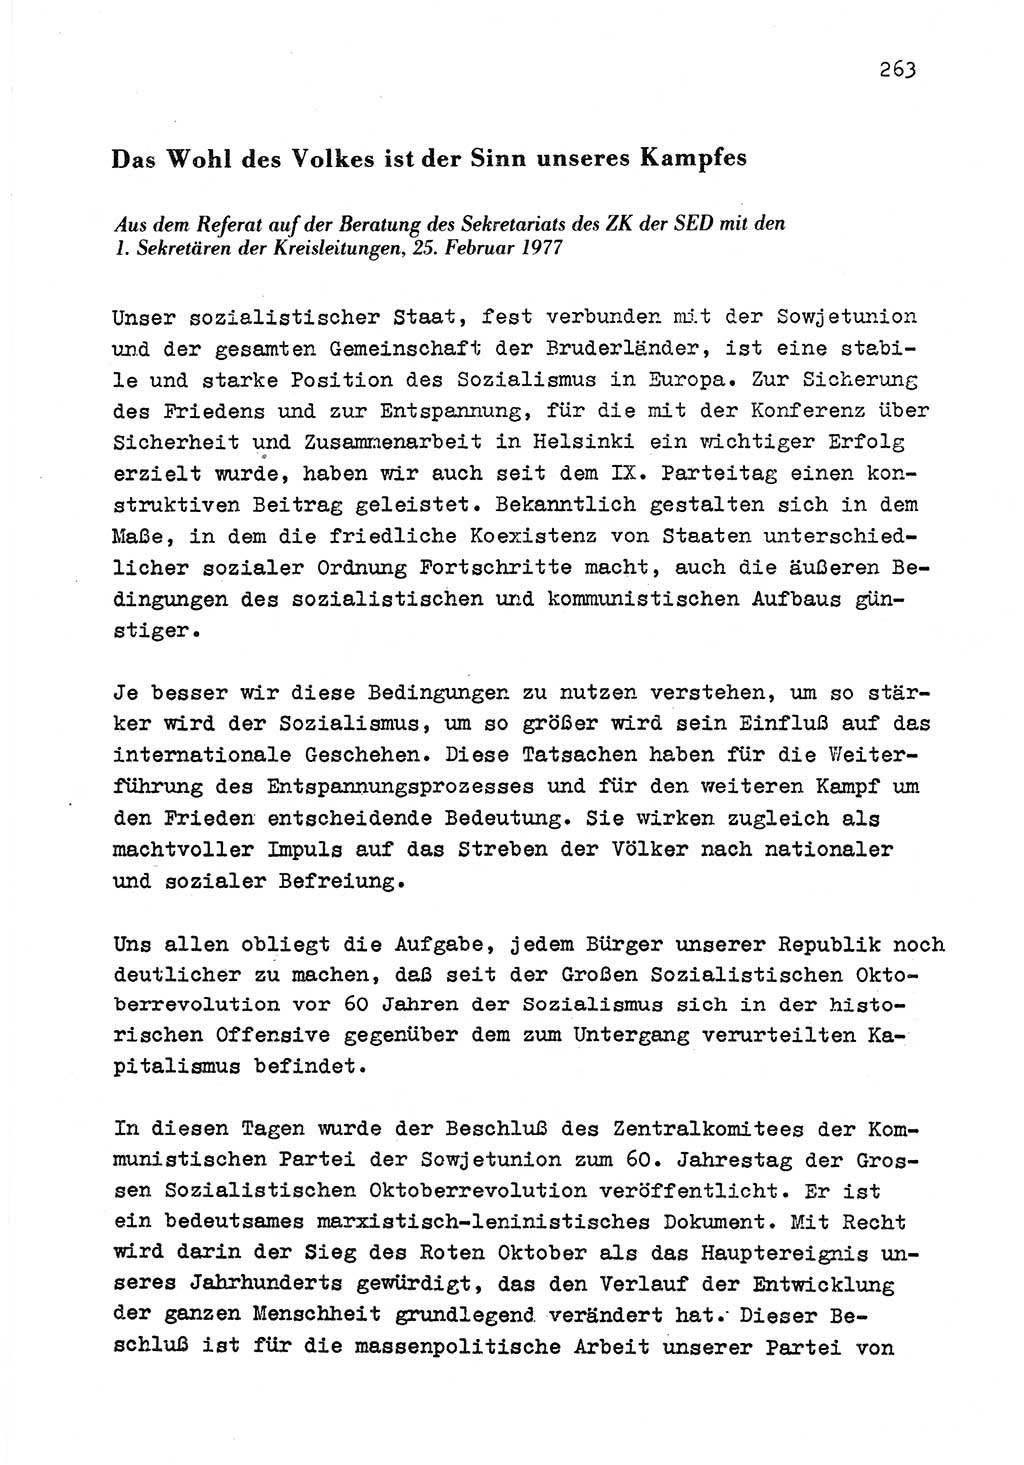 Zu Fragen der Parteiarbeit [Sozialistische Einheitspartei Deutschlands (SED) Deutsche Demokratische Republik (DDR)] 1979, Seite 263 (Fr. PA SED DDR 1979, S. 263)